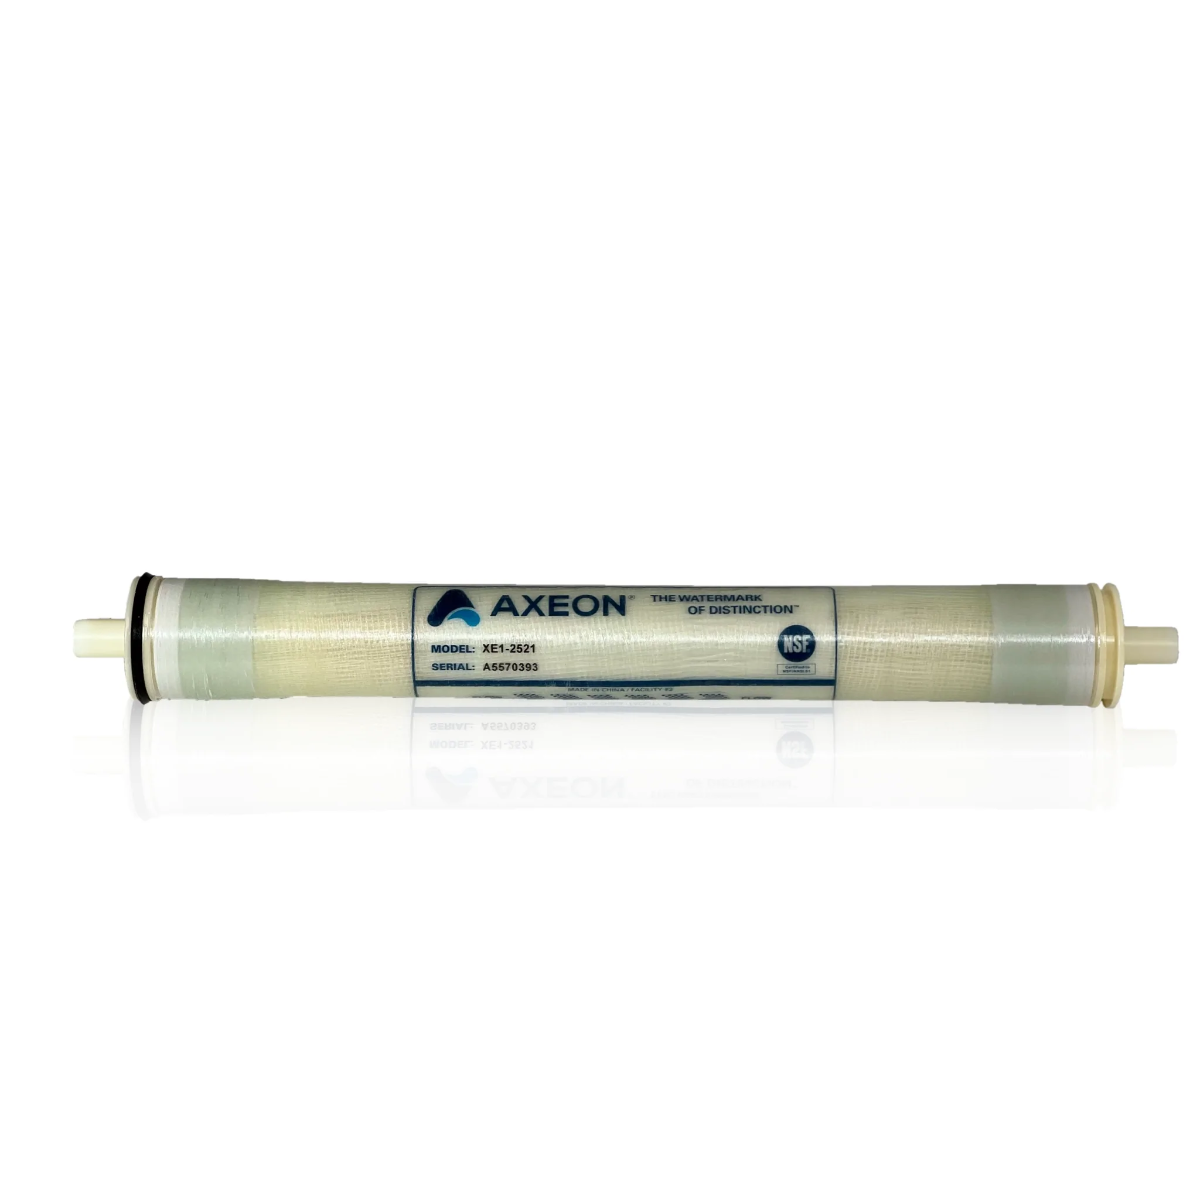 AXEON XE1-2521 NSF-61 Reverse Osmosis Membrane